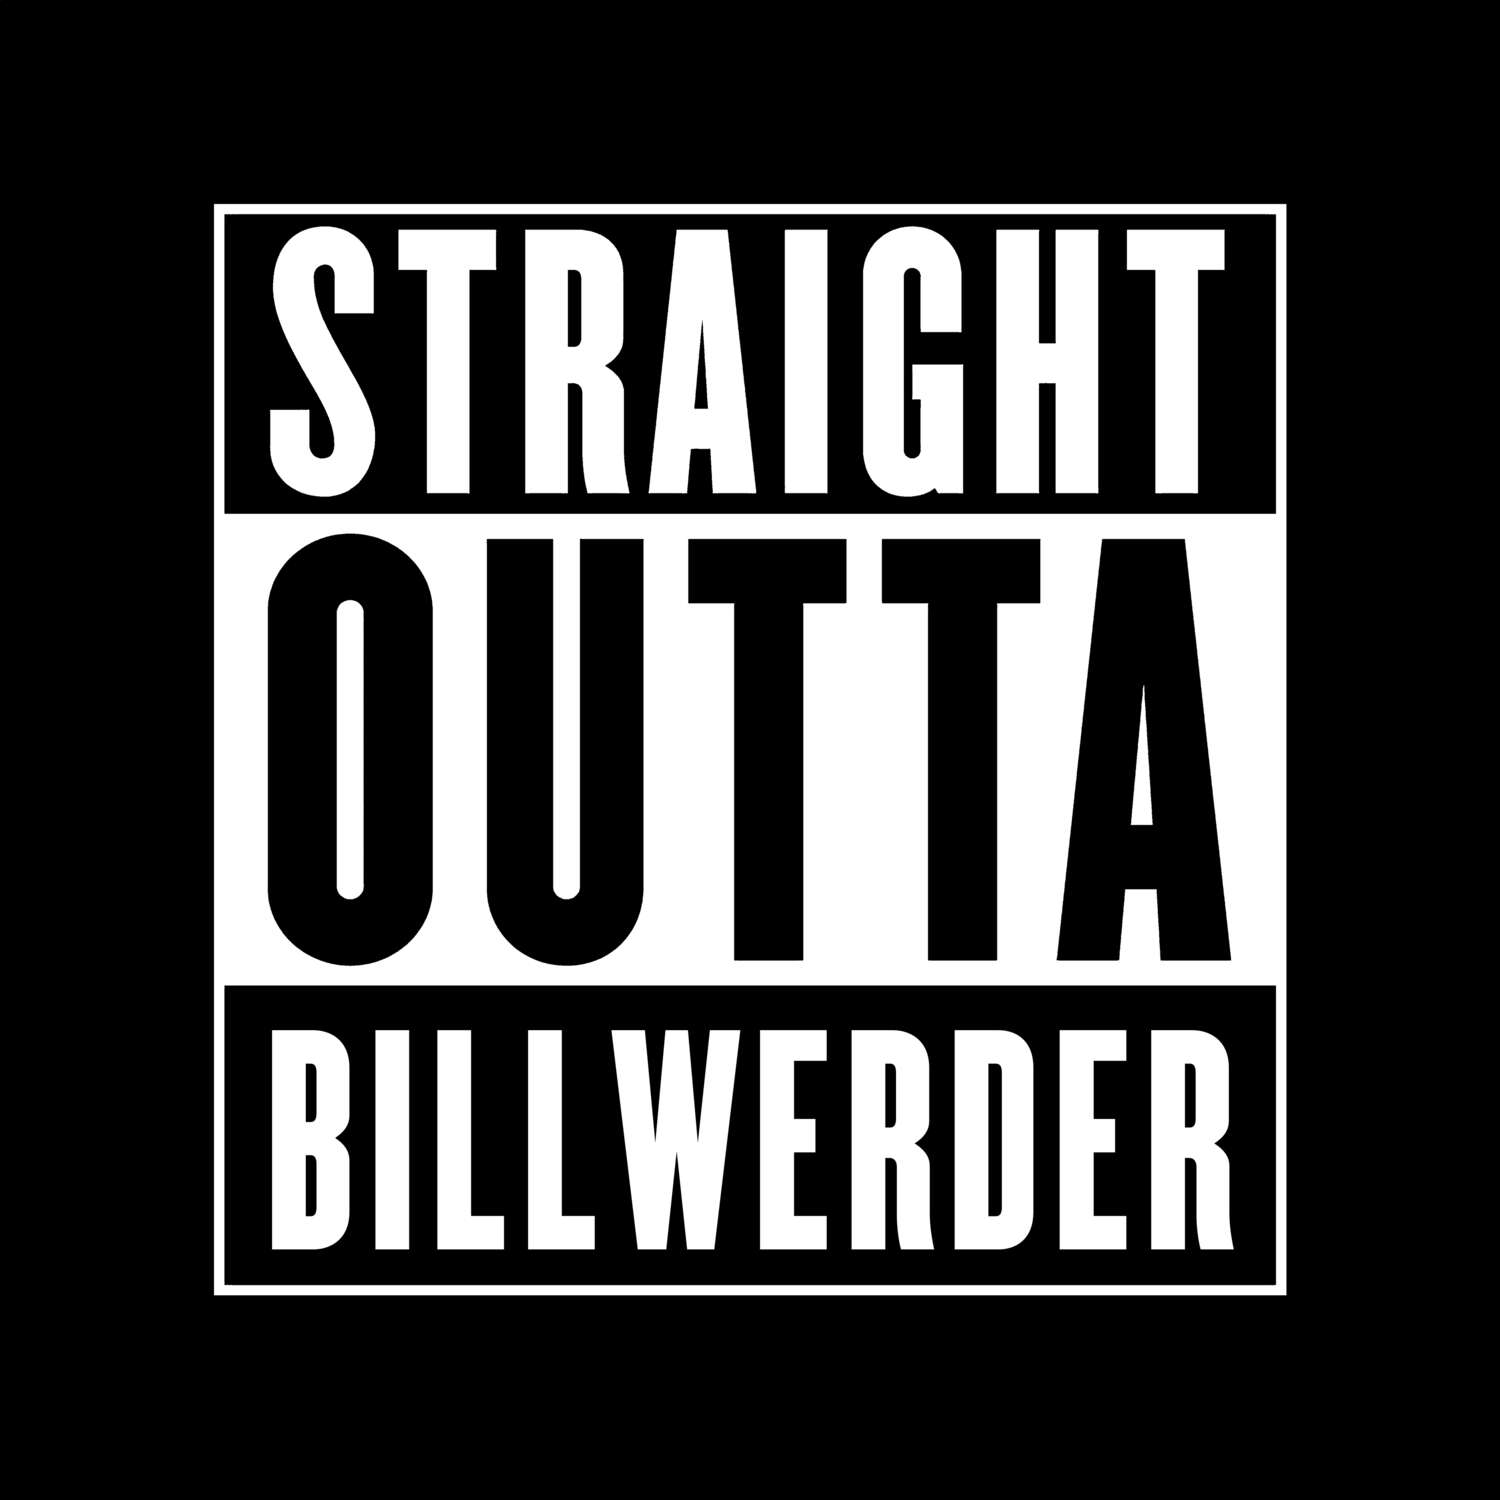 Billwerder T-Shirt »Straight Outta«